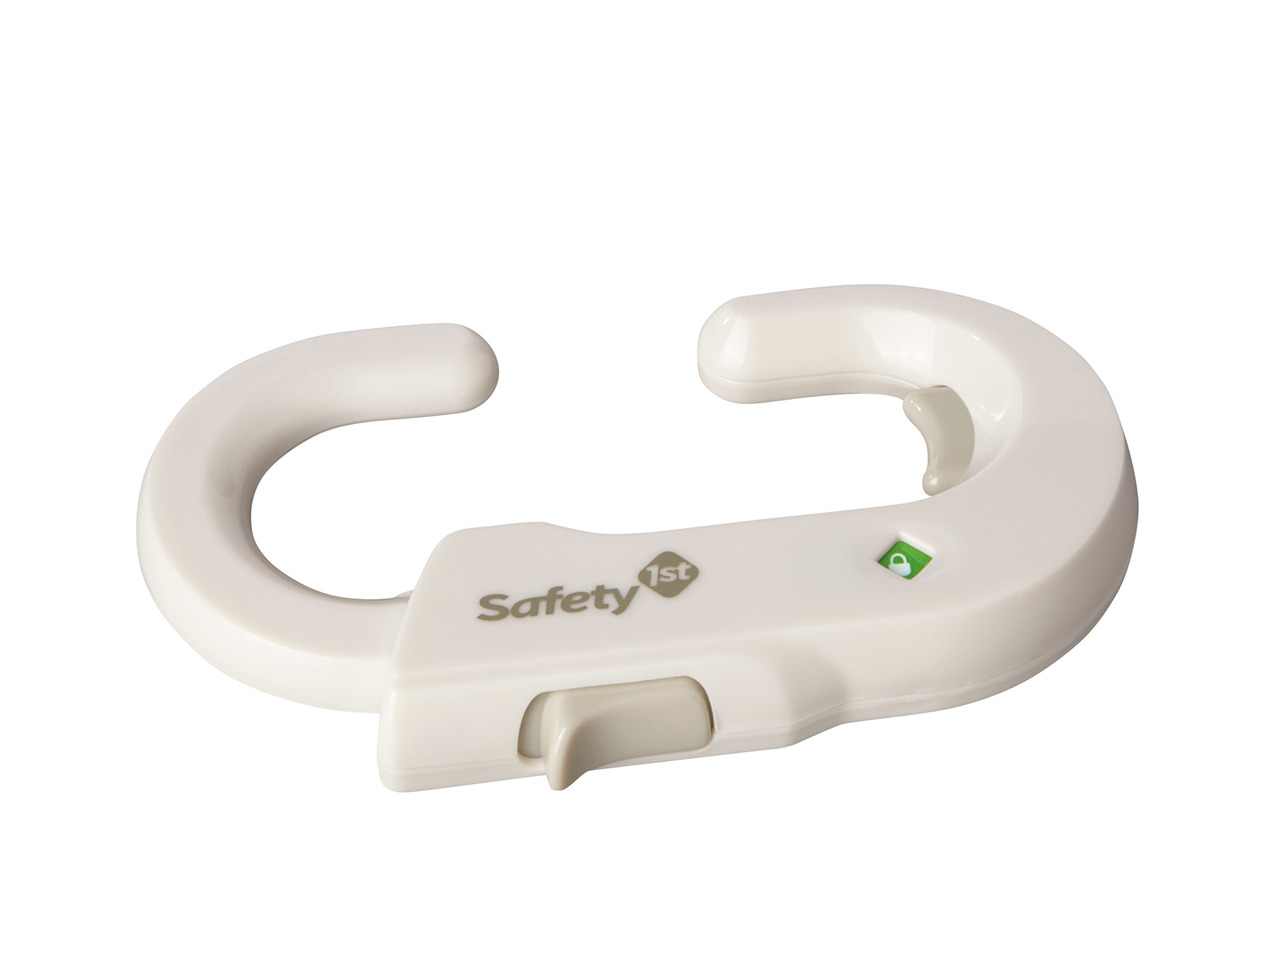 Safety 1st Child Safety Accessories1